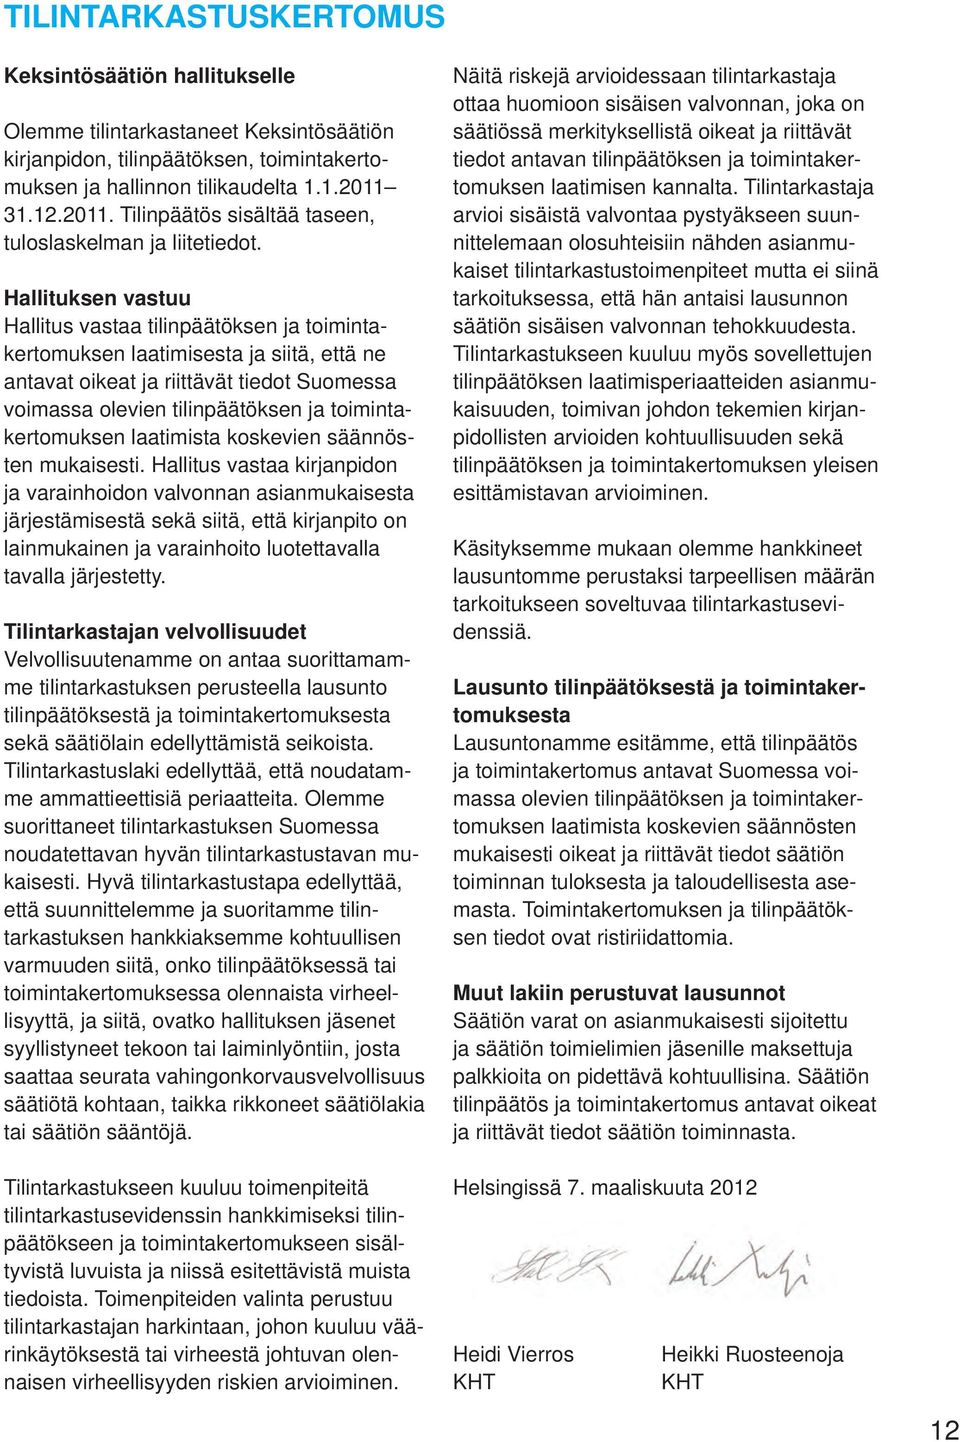 Hallituksen vastuu Hallitus vastaa tilinpäätöksen ja toimintakertomuksen laatimisesta ja siitä, että ne antavat oikeat ja riittävät tiedot Suomessa voimassa olevien tilinpäätöksen ja